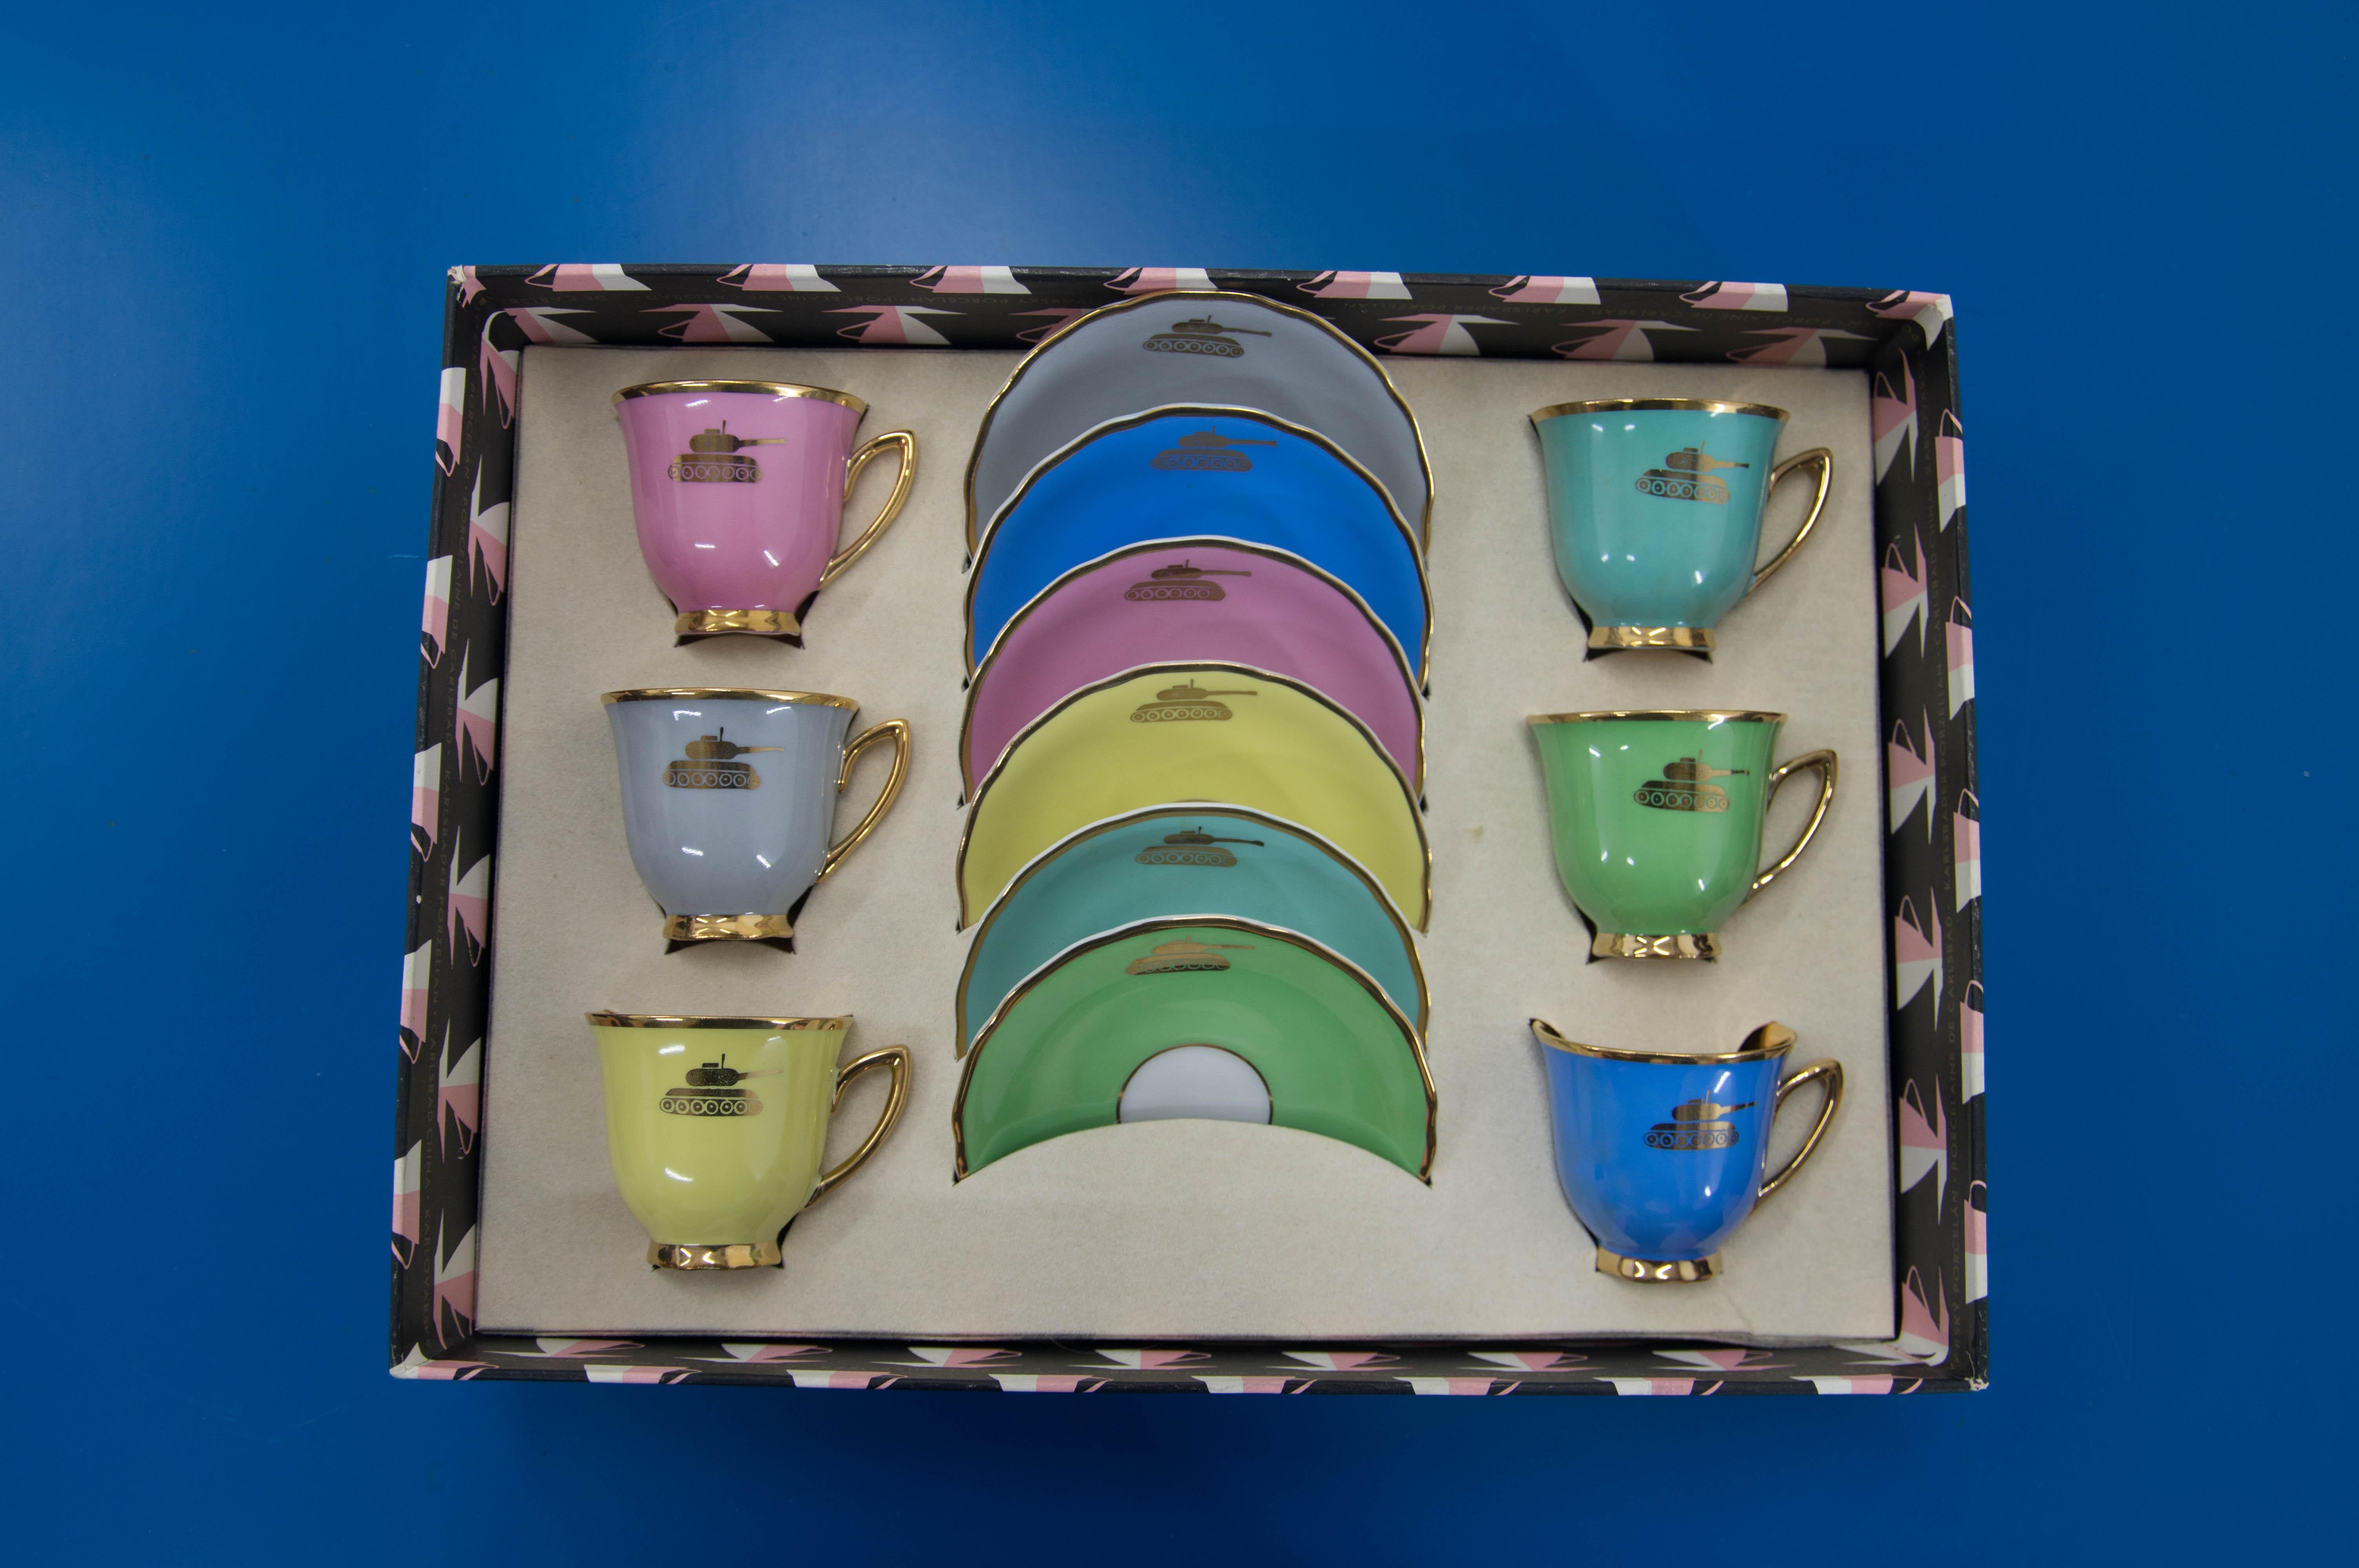 Ensemble de six tasses et assiettes jamais utilisées.
Décor très inhabituel - réservoirs en or
Fabriqué à Karlsbad en Tchécoslovaquie dans les années 1970.
Parfait état d'origine, y compris la boîte d'origine
Mesures d'une tasse : 6x6cm
Diamètre